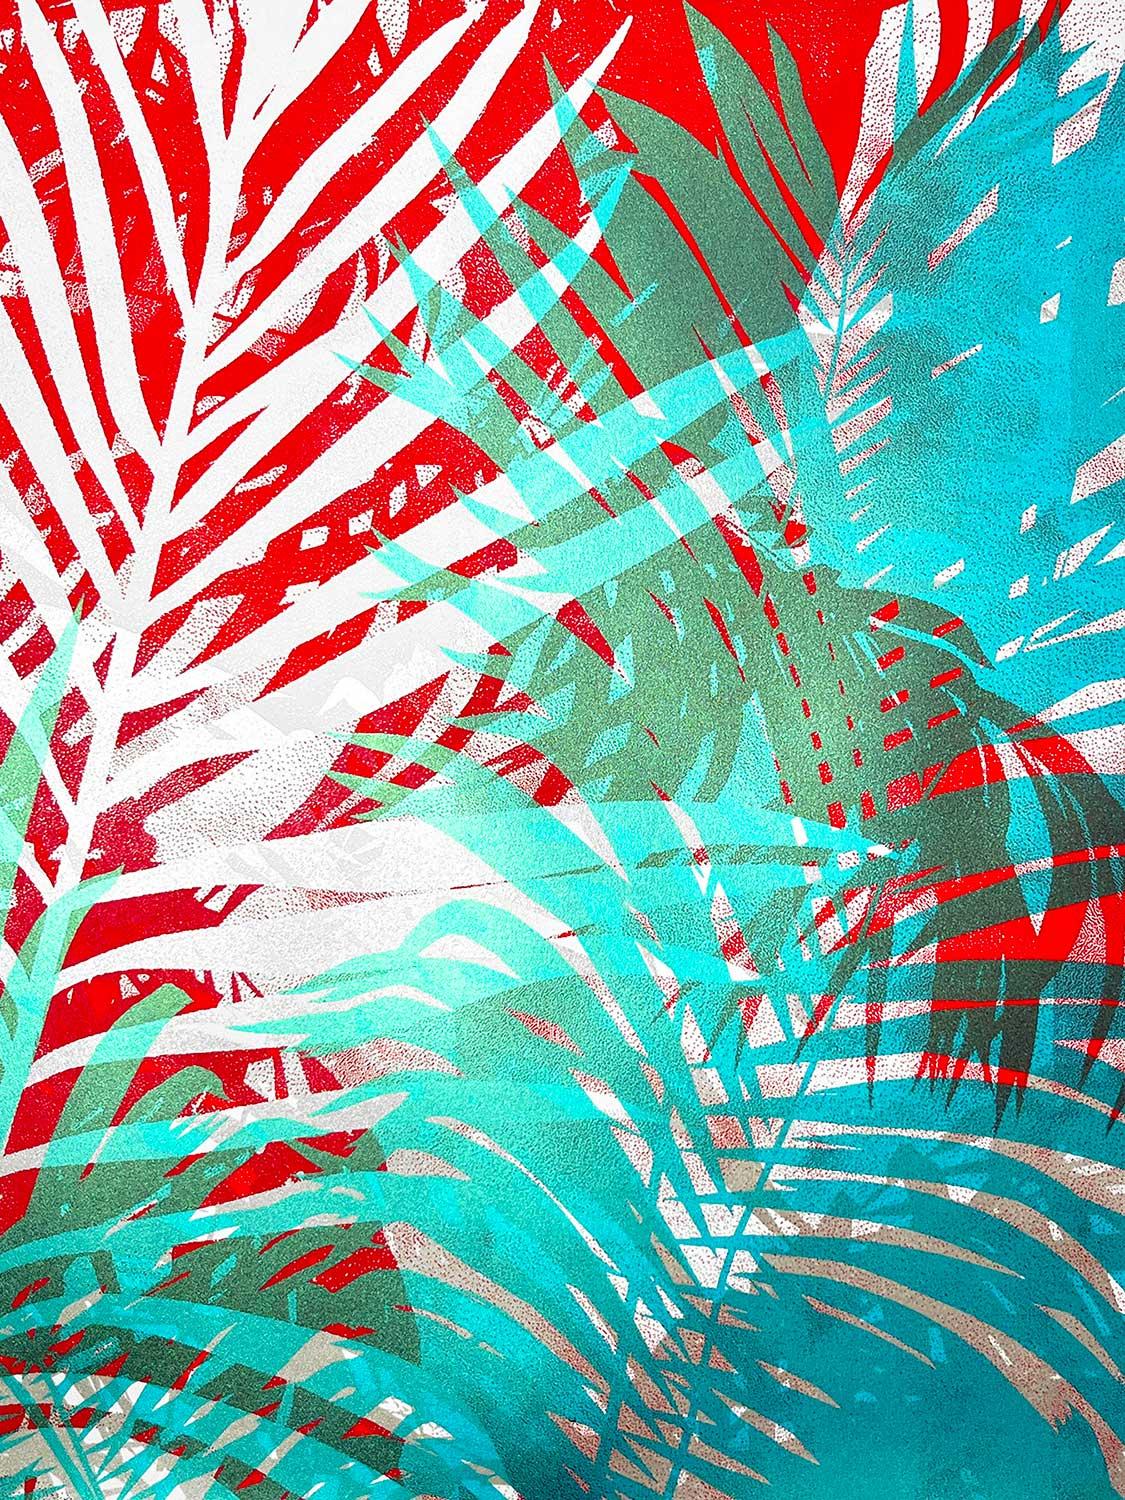 Dies ist ein Dreifarben-Siebdruck, der zwei Metallic-Farben enthält. Der Druck fängt die wilde Natur der Palmenblätter ein. Limitierte Auflage von 40 Stück. Sie ist 40 x 40 cm groß. Kunstwerk gedruckt auf GF Smith Naturalis 330gsm.

ZUSÄTZLICHE